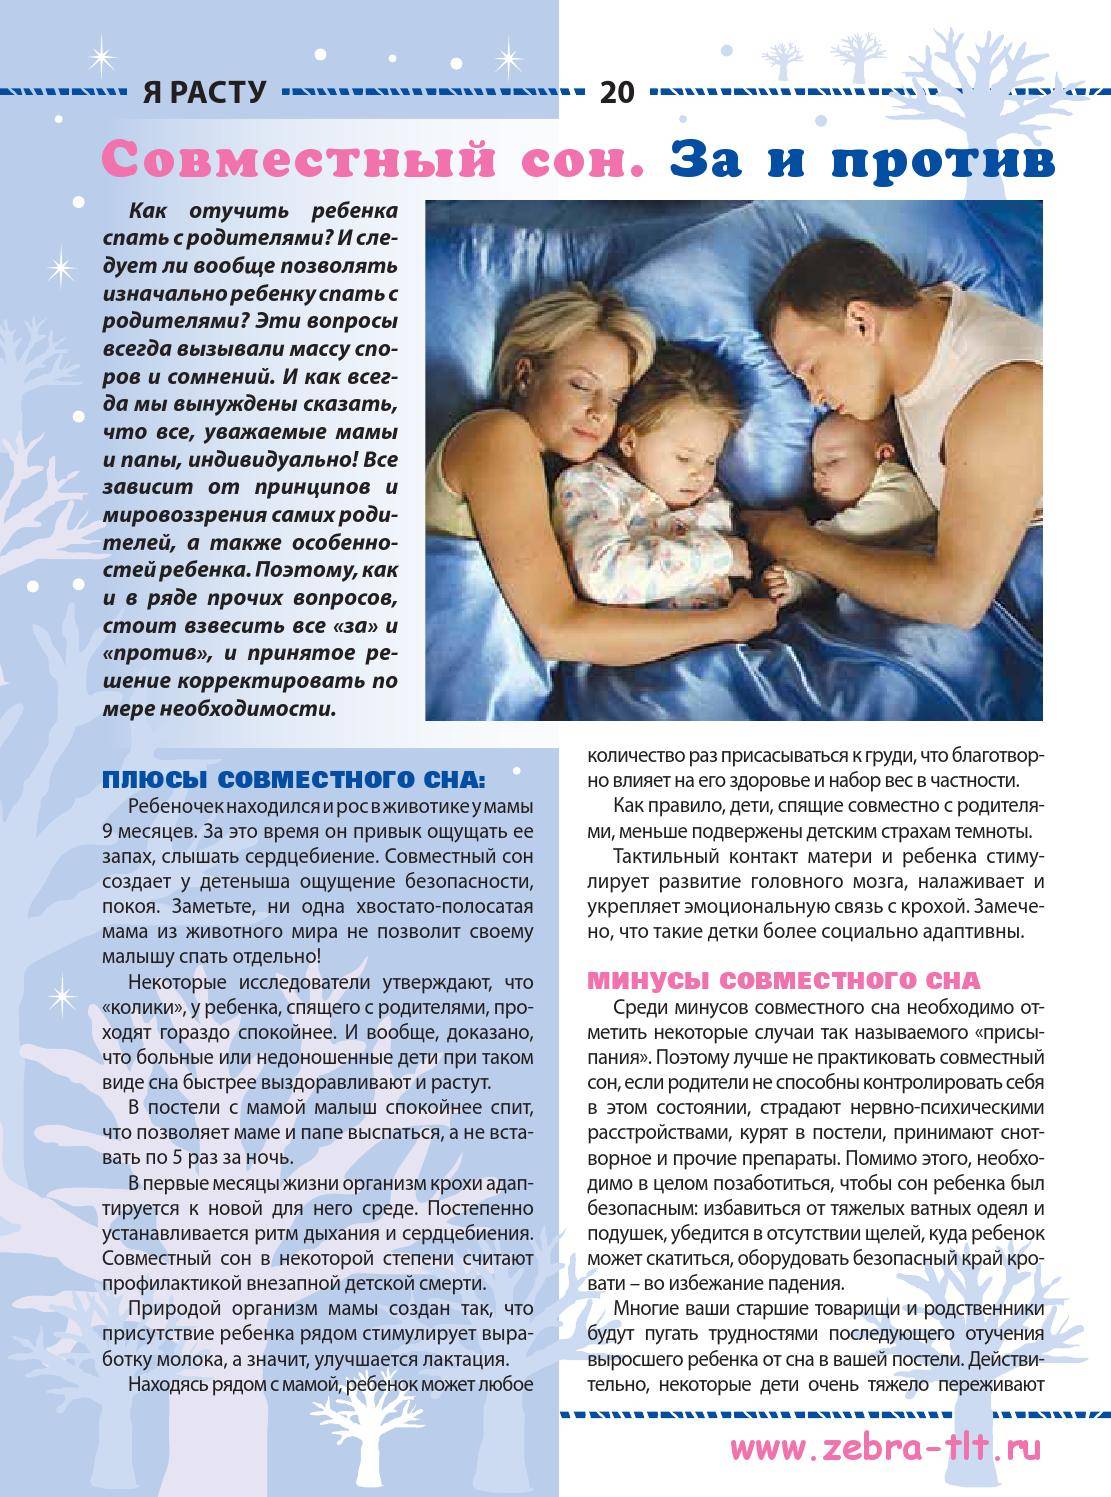 Совместный сон с ребенком: опыт многодетных | православие и мир